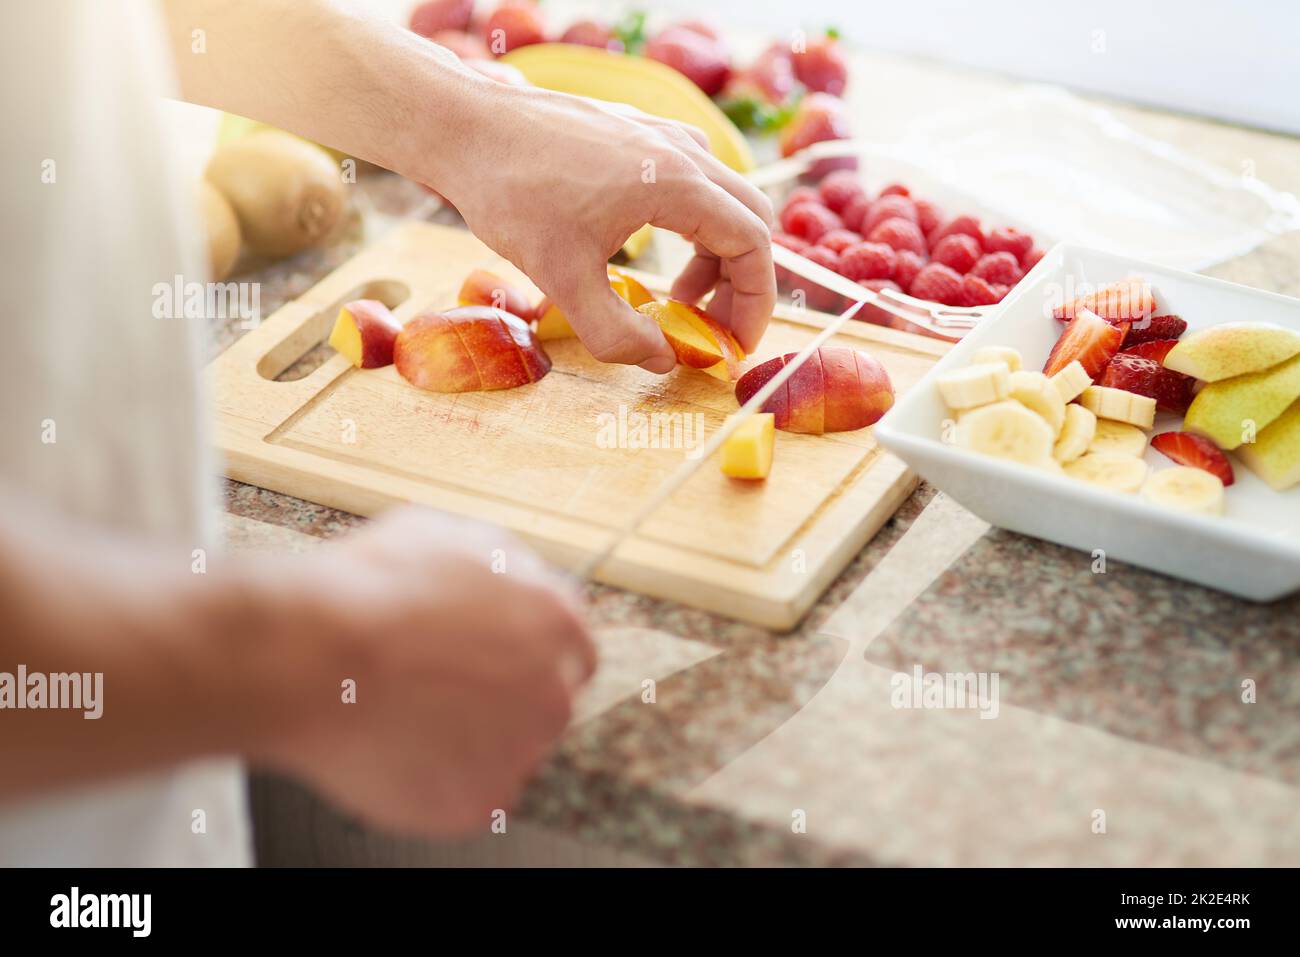 Nichts ist besser als ein gesundes Frühstück. Eine kleine Aufnahme eines jungen Mannes, der in seiner Küche einen Obstsalat zubereitet. Stockfoto